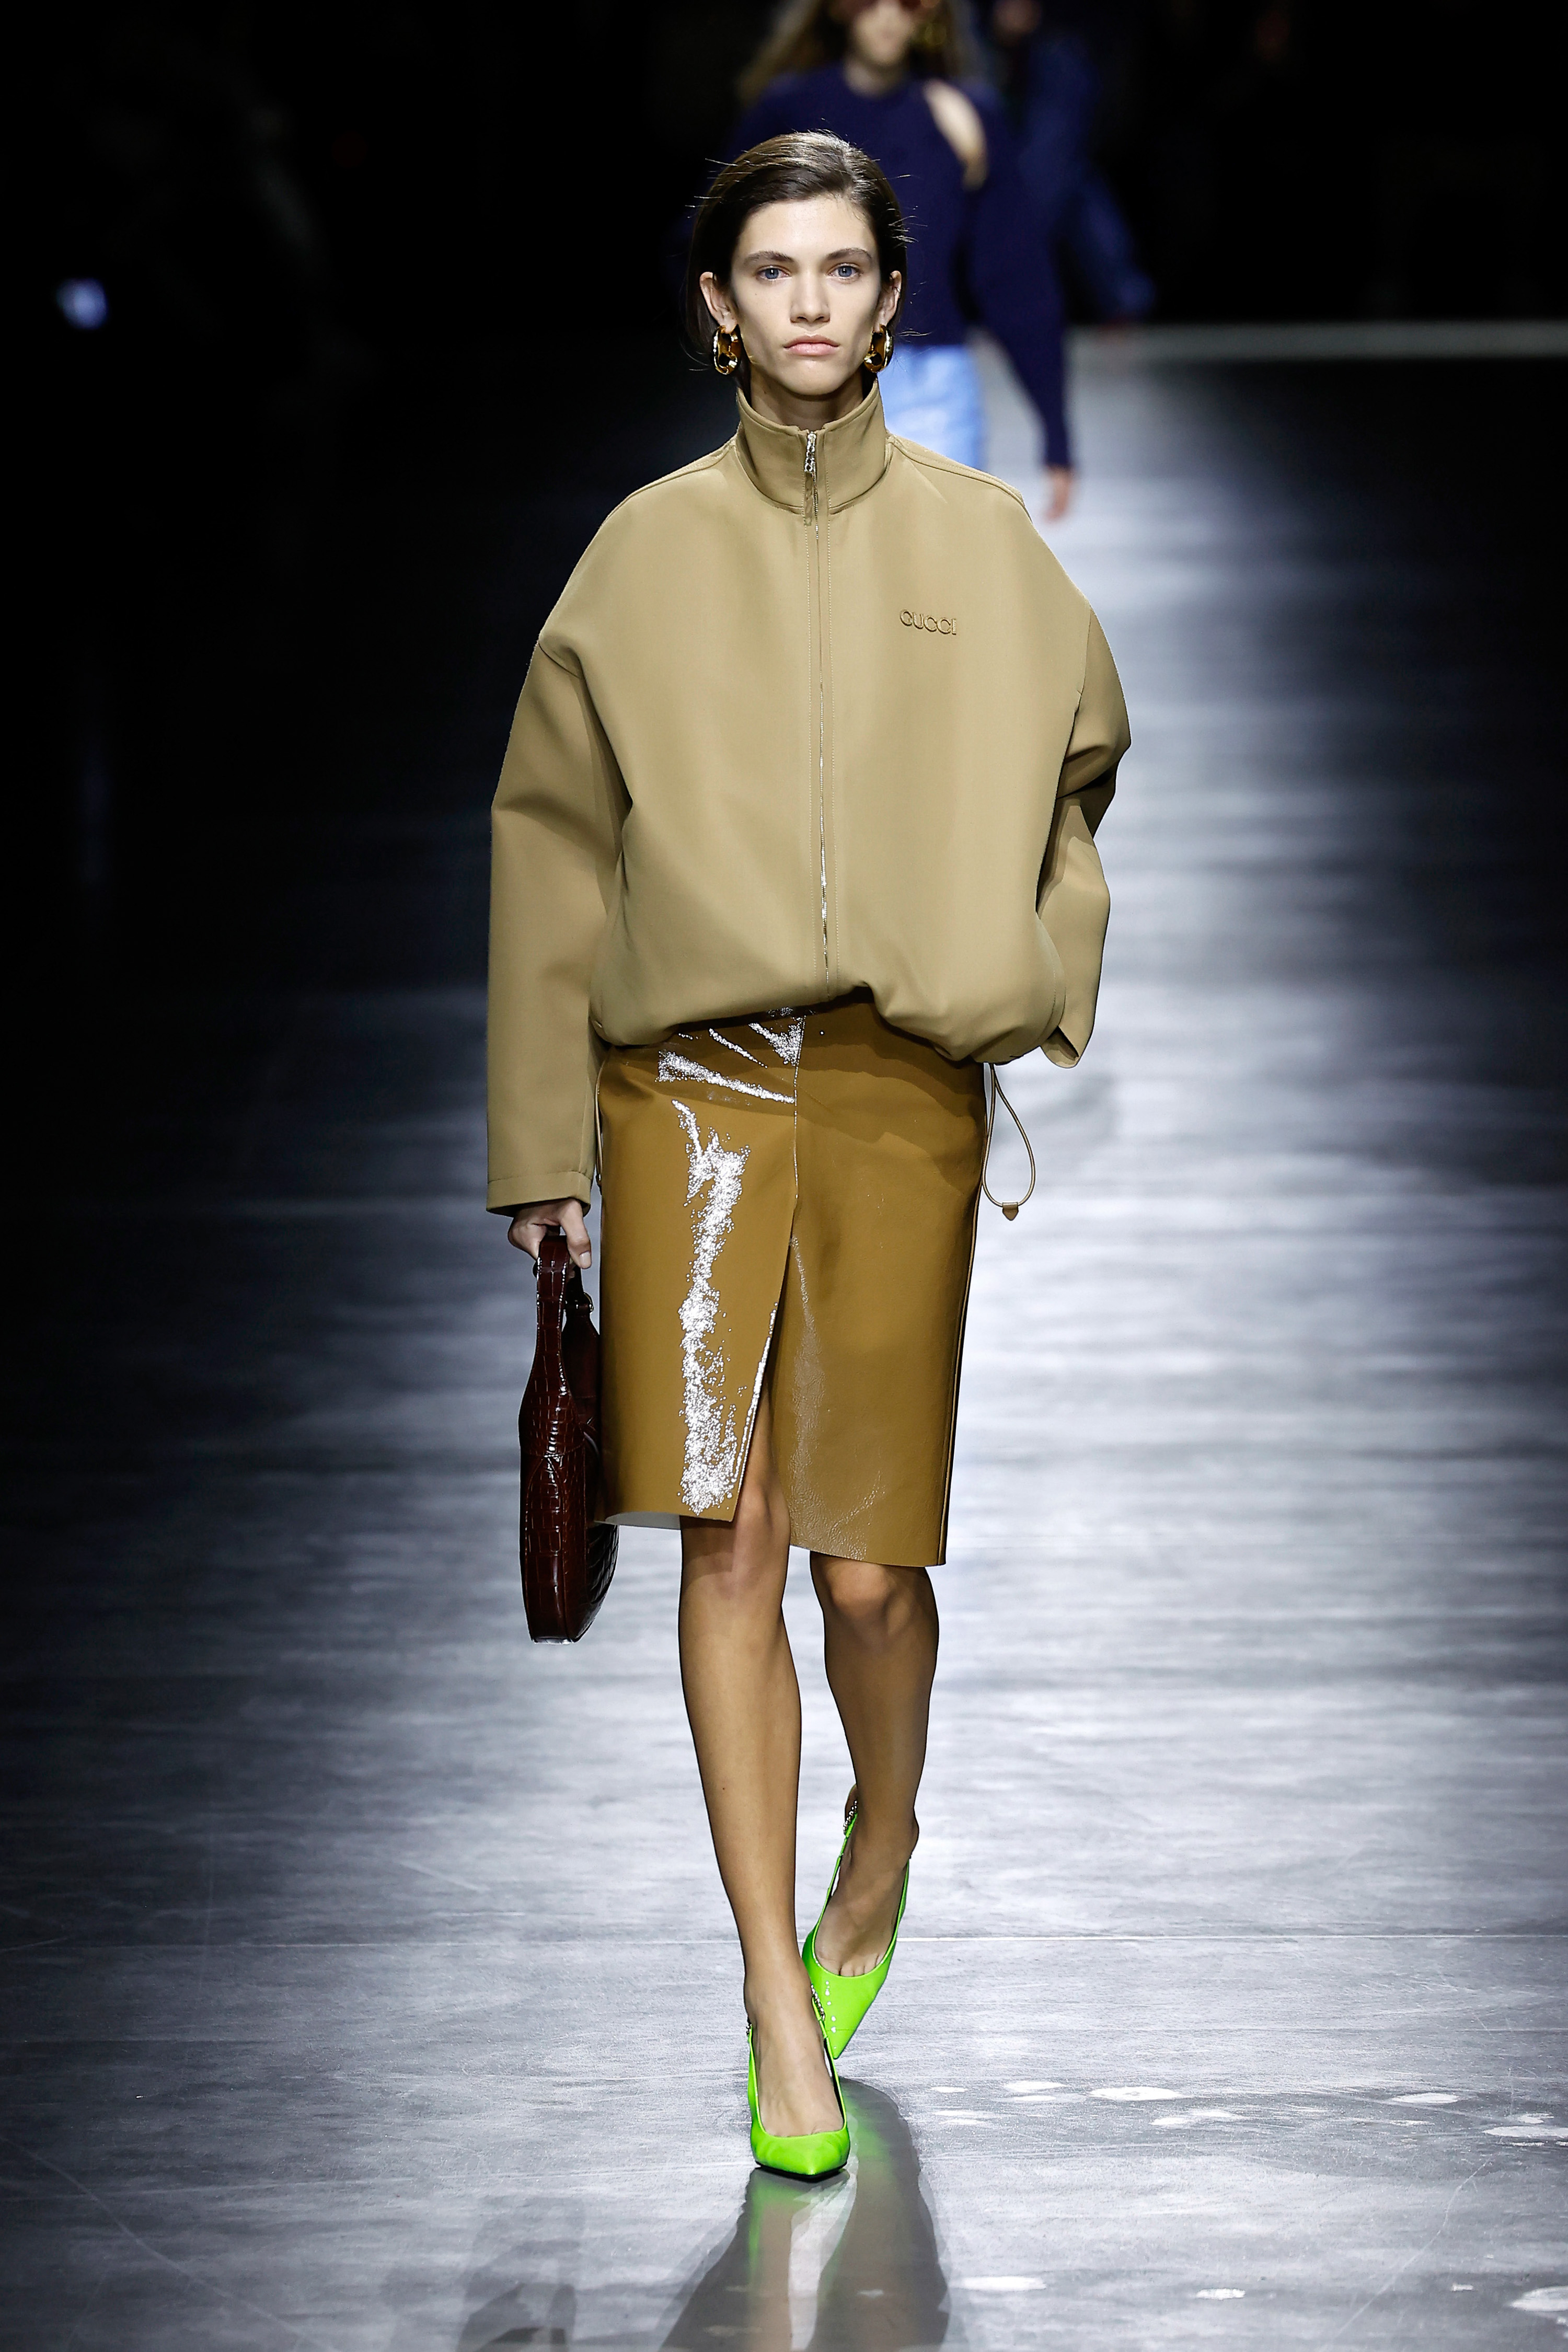 Investors are too Fashion-Forward at Gucci – TextileFuture